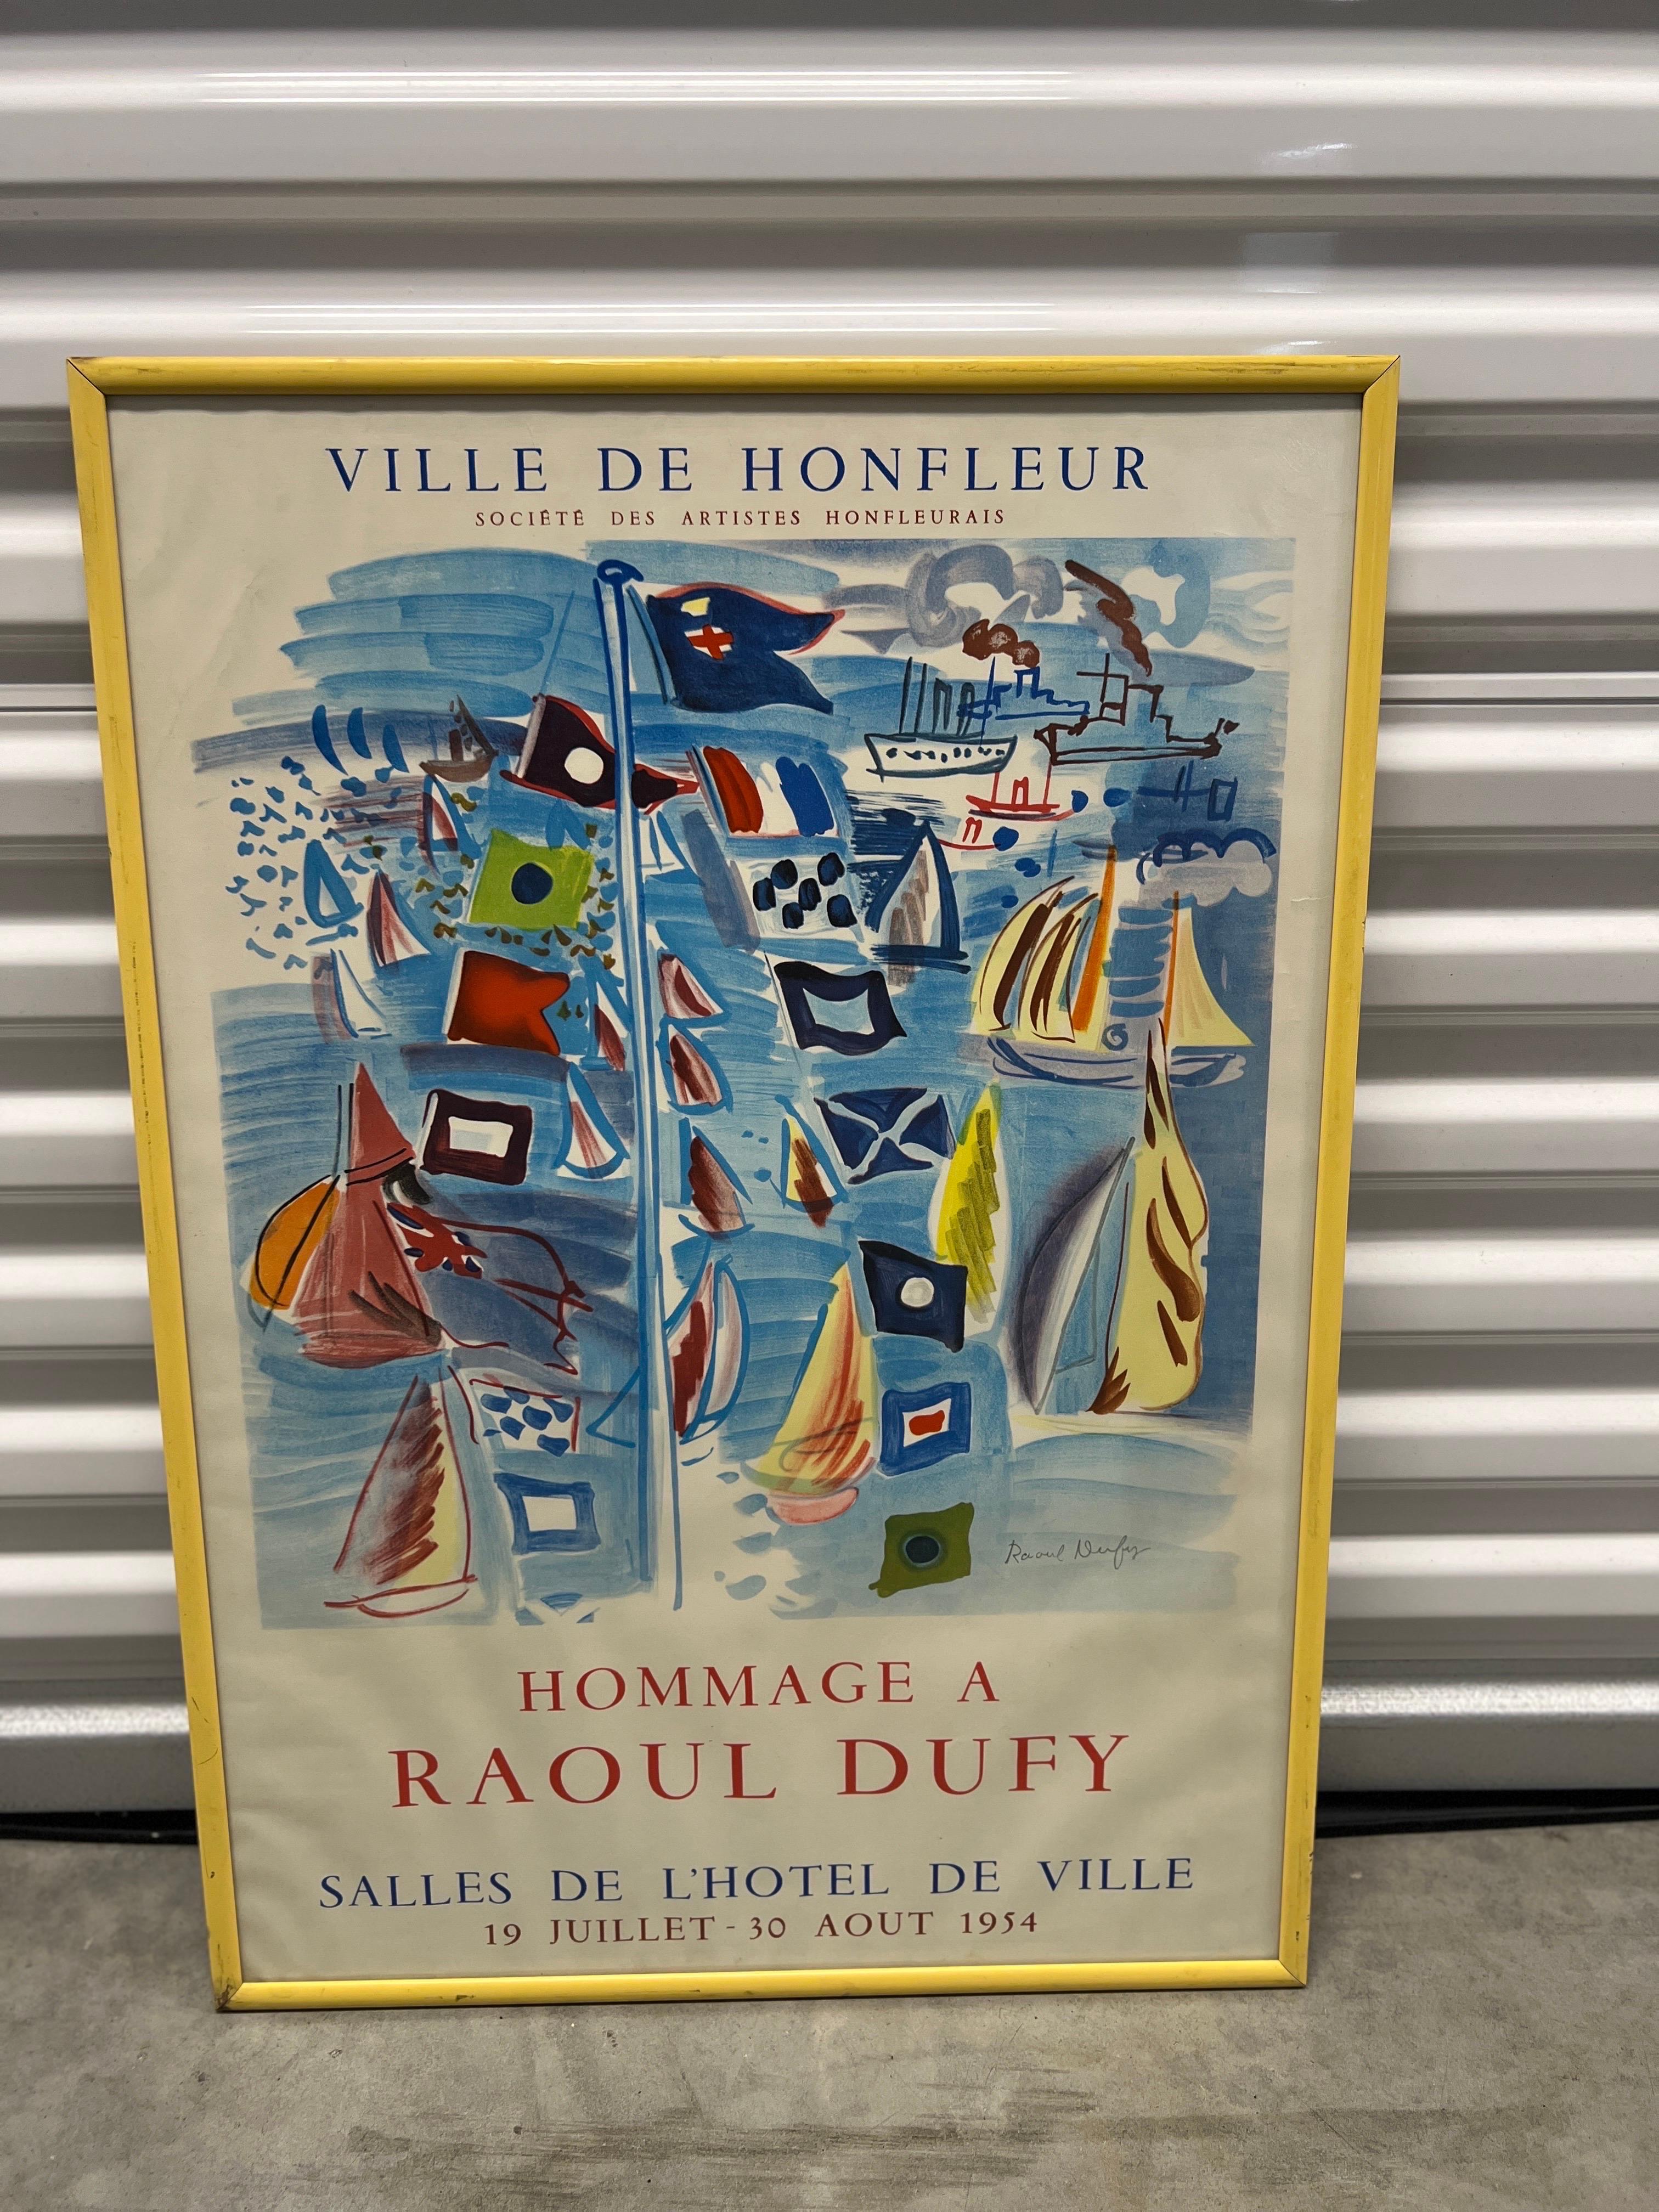 Raoul Dufy Exhibition “Ville de Honfleur Hommage a Raoul Dufy” Circa 1954 In Good Condition In Atlanta, GA